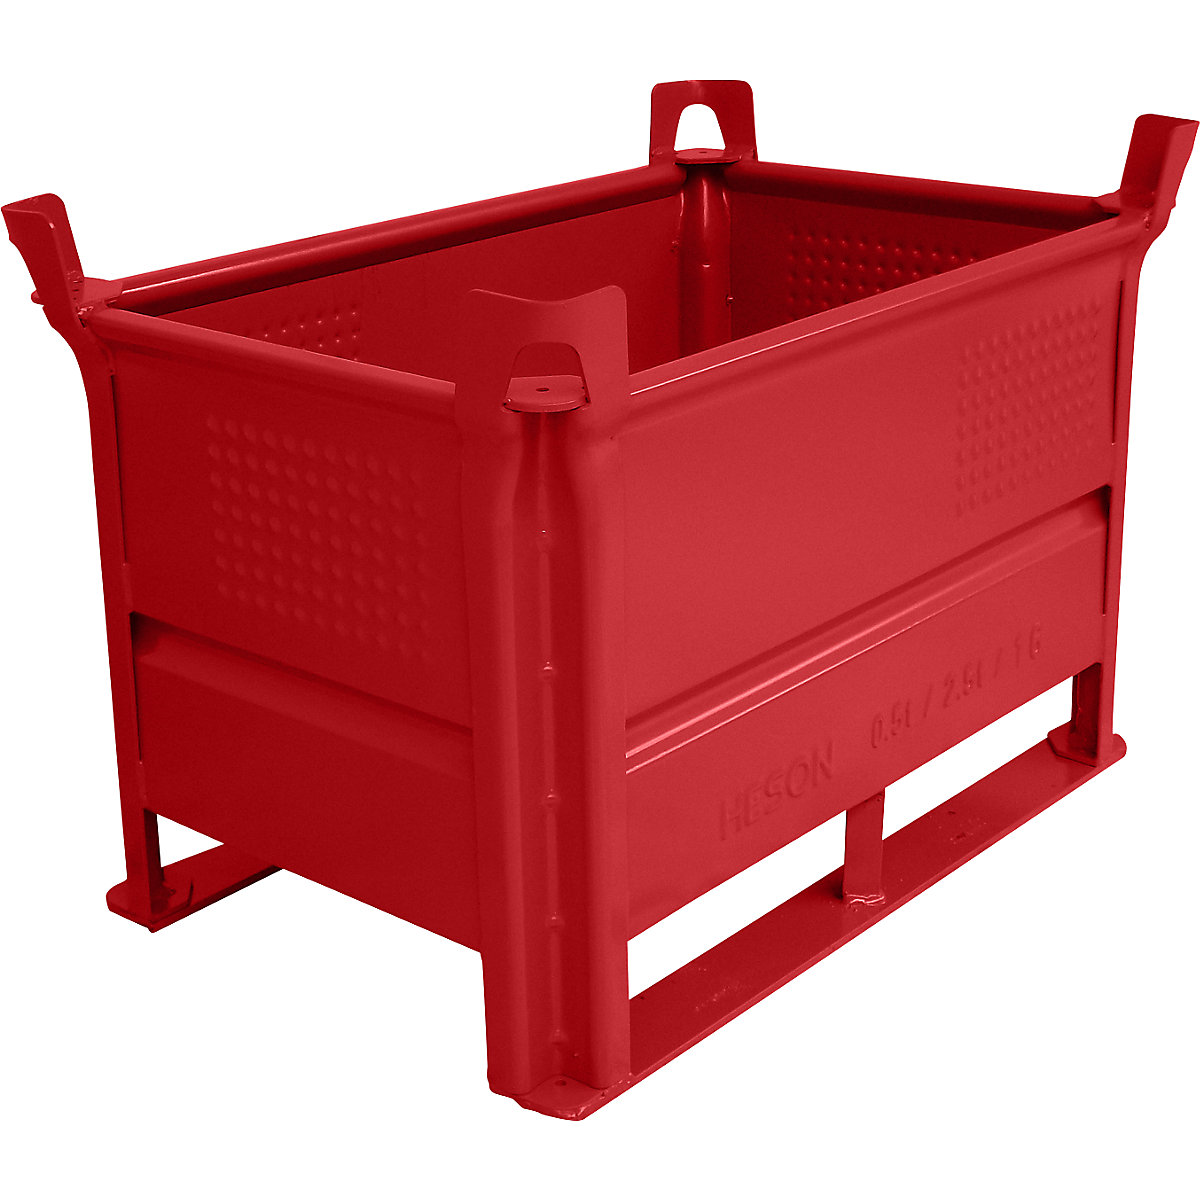 Stohovací přepravka s ližinami – Heson, d x š 800 x 500 mm, nosnost 1000 kg, červená, od 1 ks-5